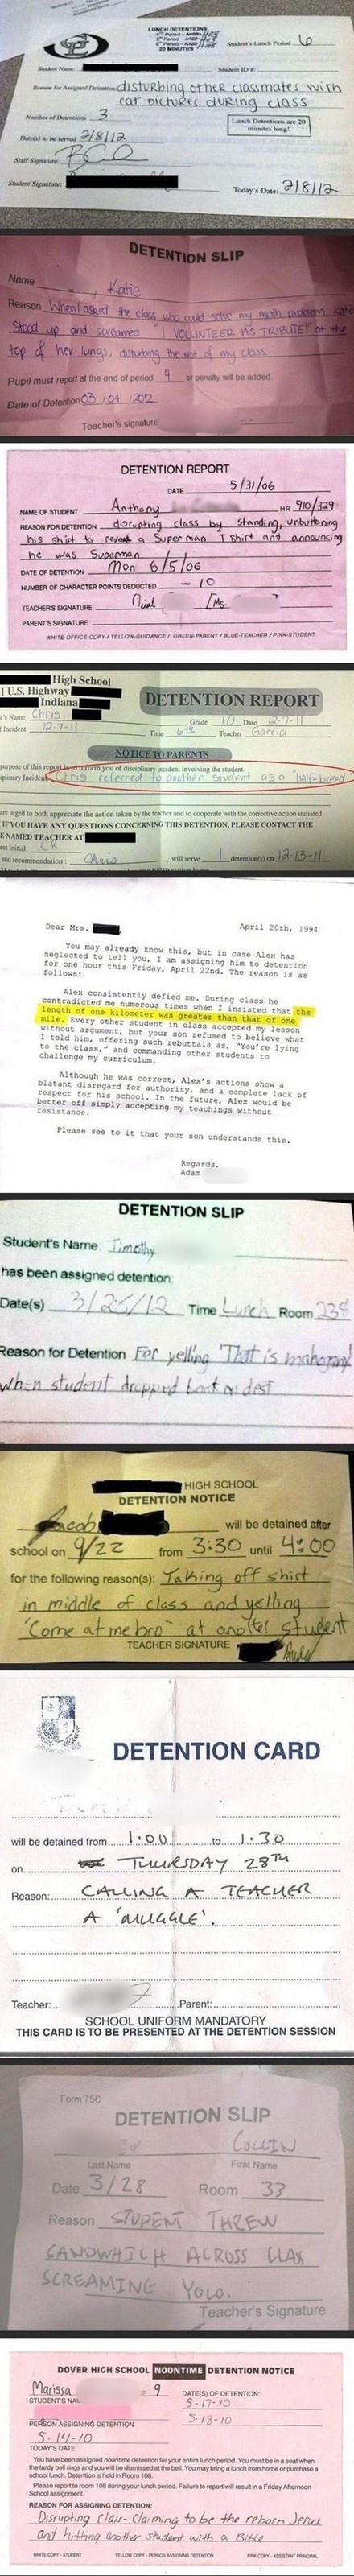 detention slips